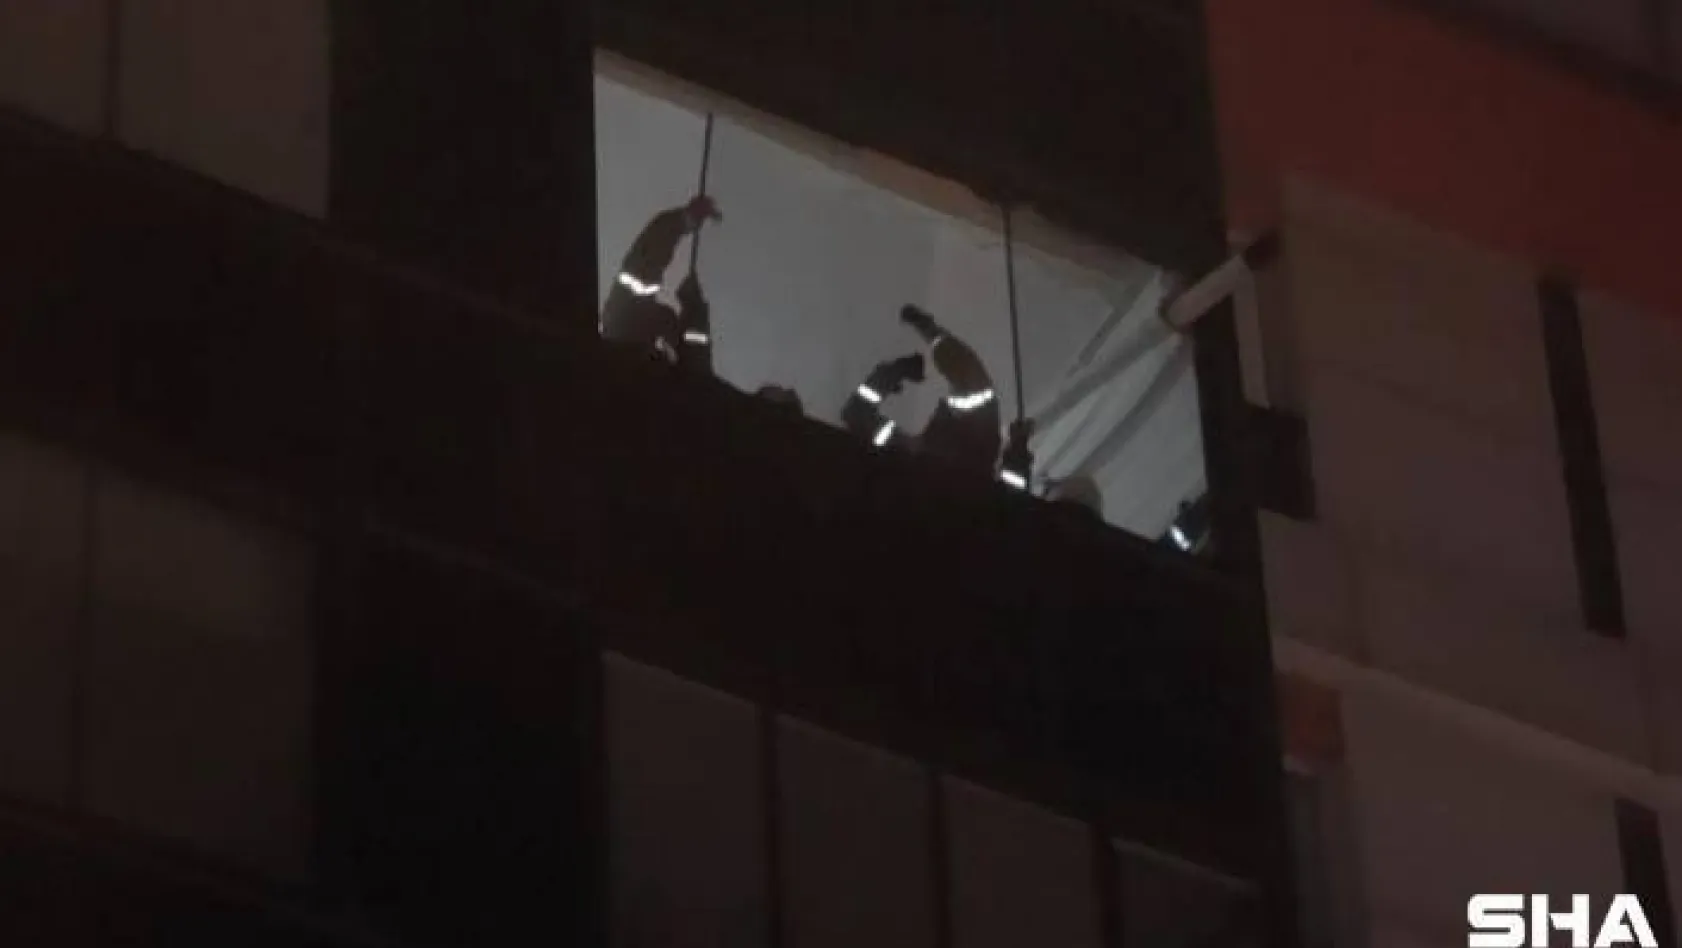 Arnavutköy'de fırtınada balkonun camları uçuşunca yardımına itfaiye koştu